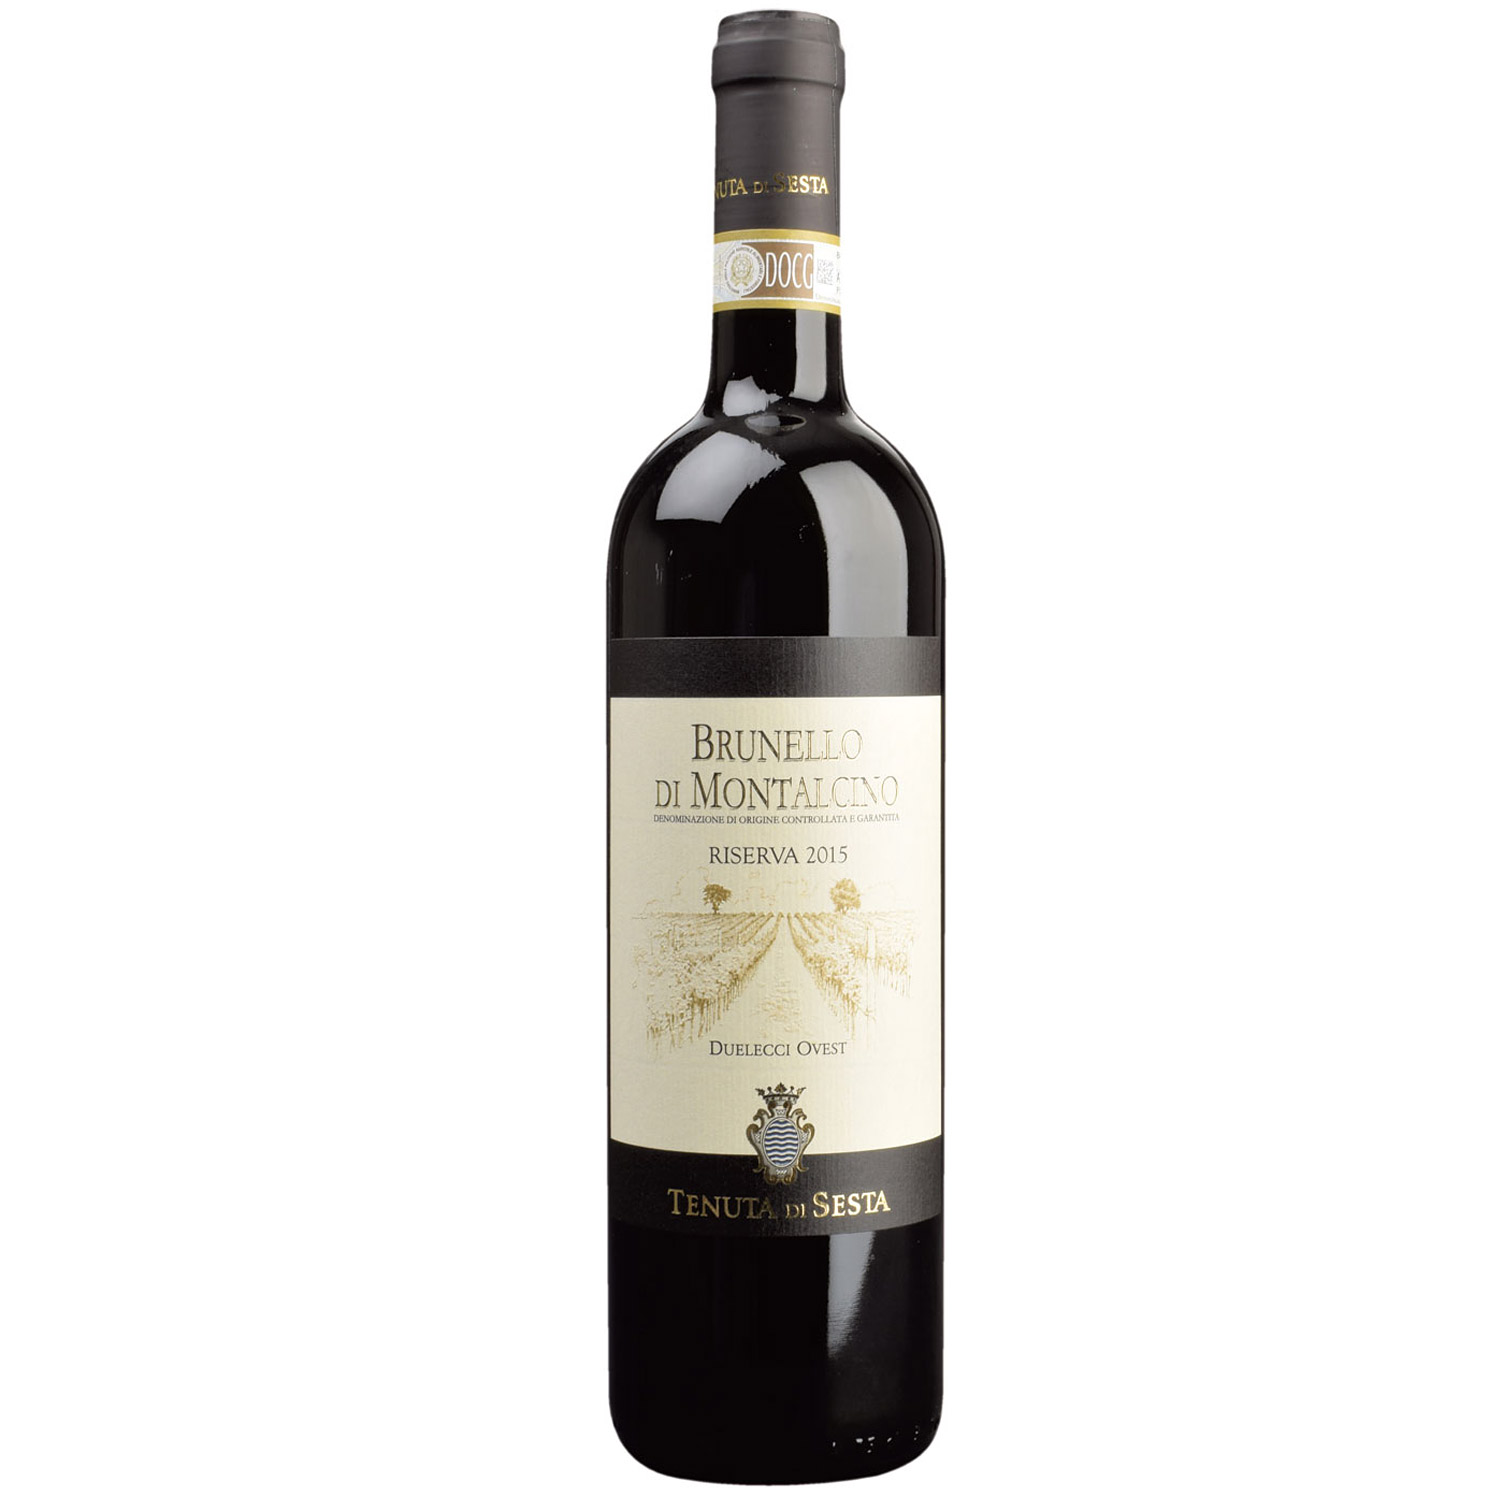 Italienischer Rotwein Tenuta di Sesta Brunello di Montalcino Riserva 2015